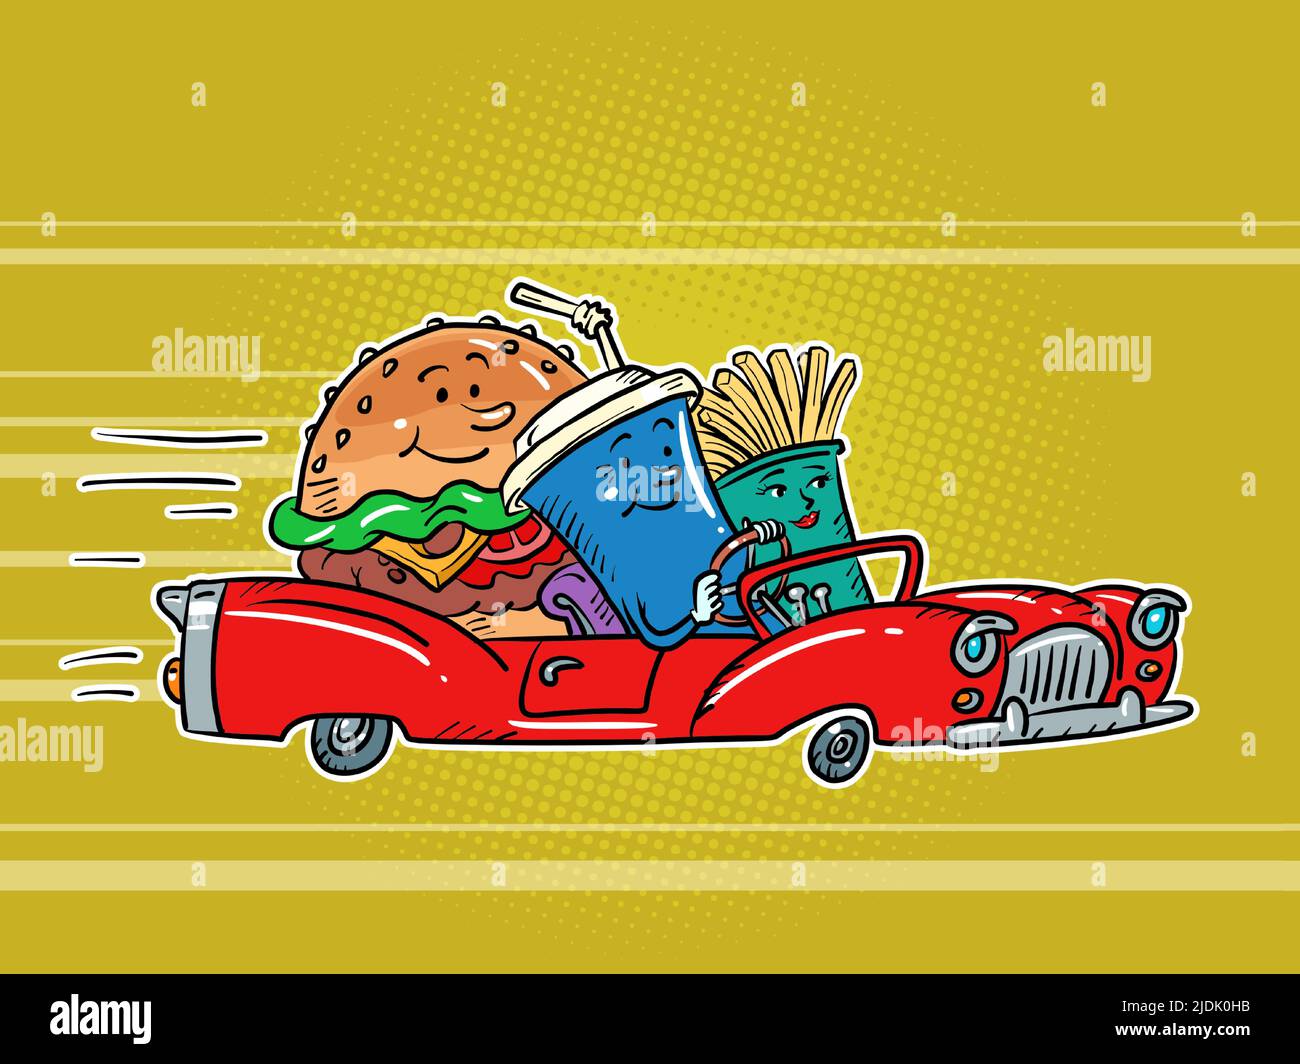 Restaurante de carretera, comida rápida personajes hamburguesa bebida cola y patatas fritas amigos coche de conducción. Cómic kitsch estilo vintage dibujo a mano illustra Ilustración del Vector